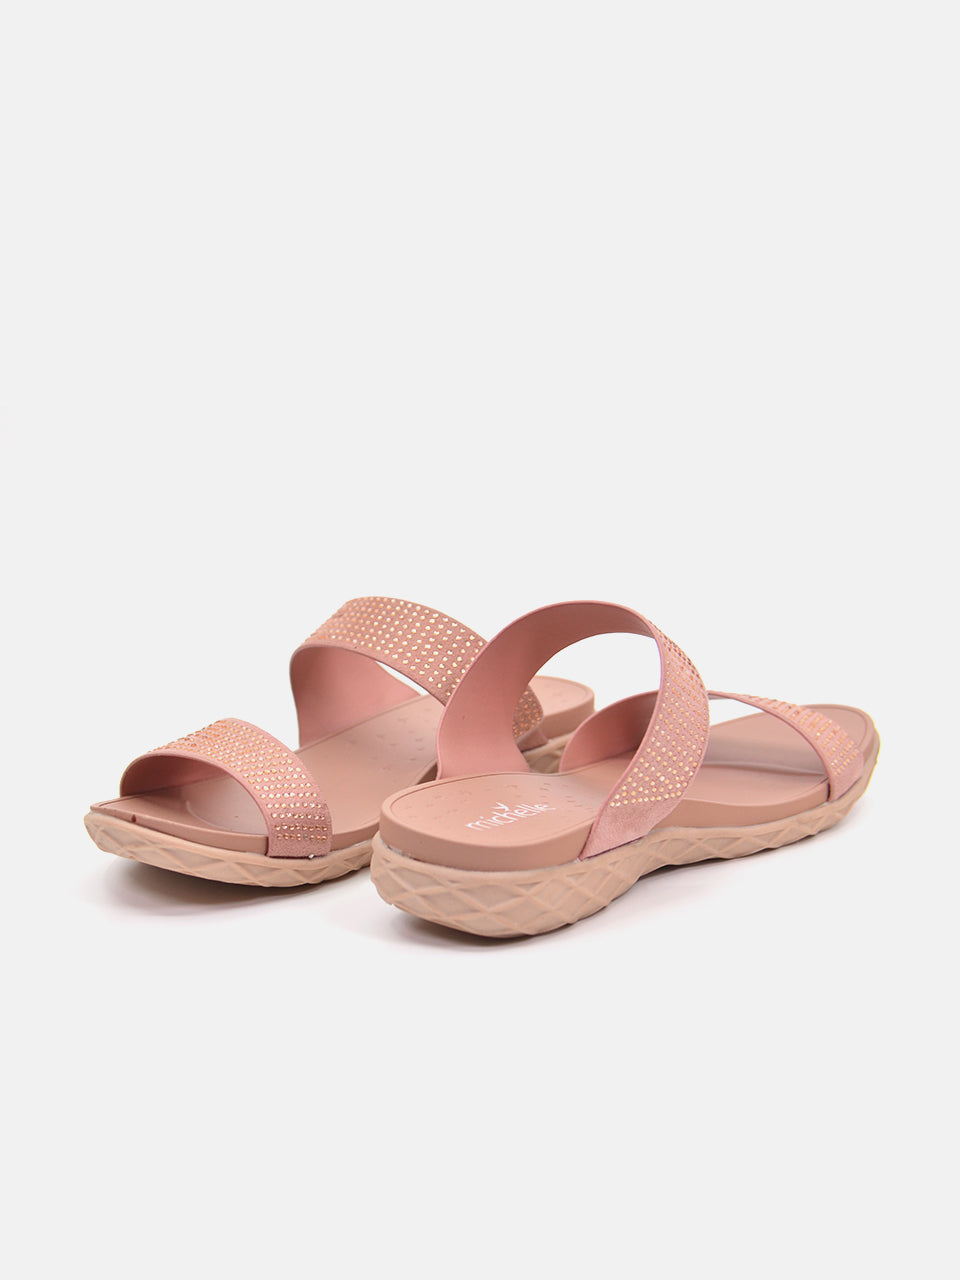 Michelle Morgan 814RJ082 Women's Flat Sandals #color_Pink